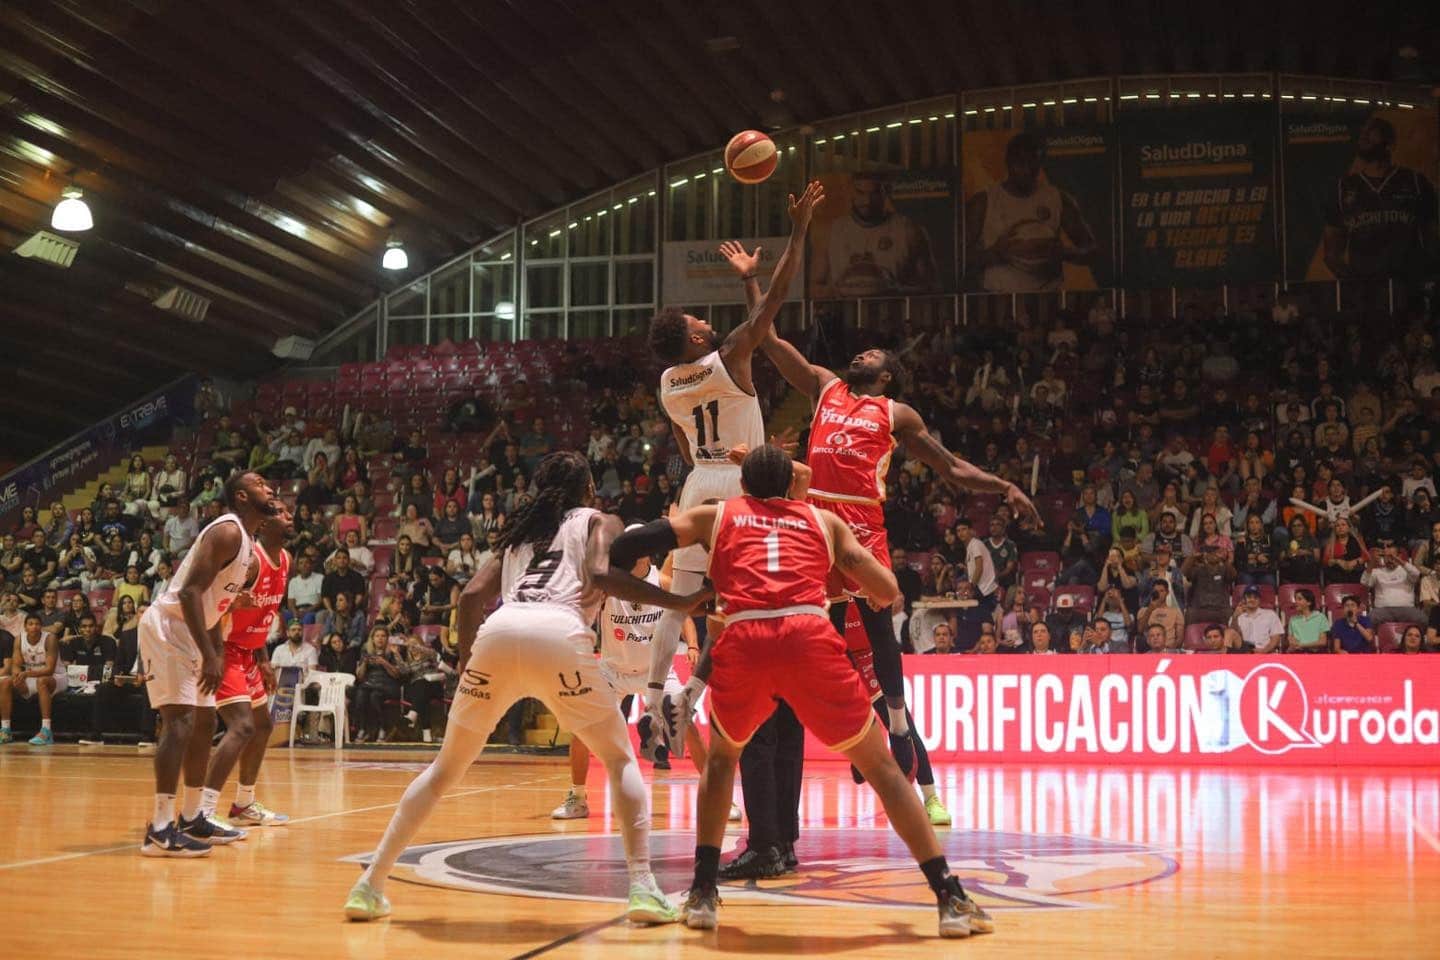 Caballeros de Culiacán vs Venados Basketball